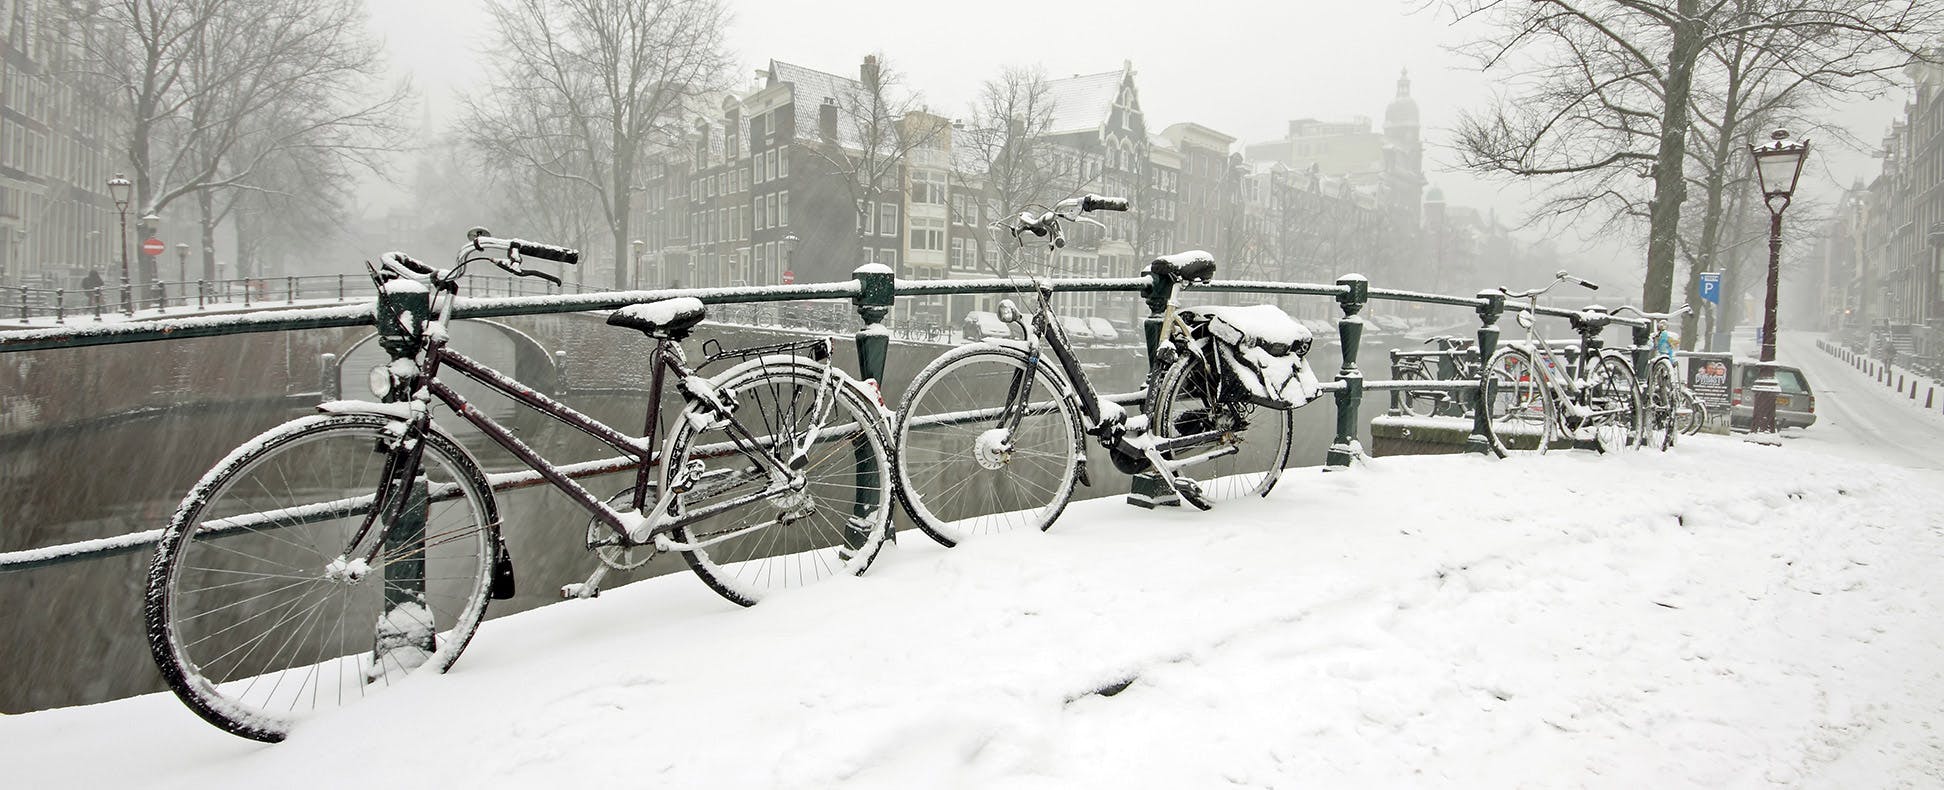 12 Tips for Winter Bike Commuting